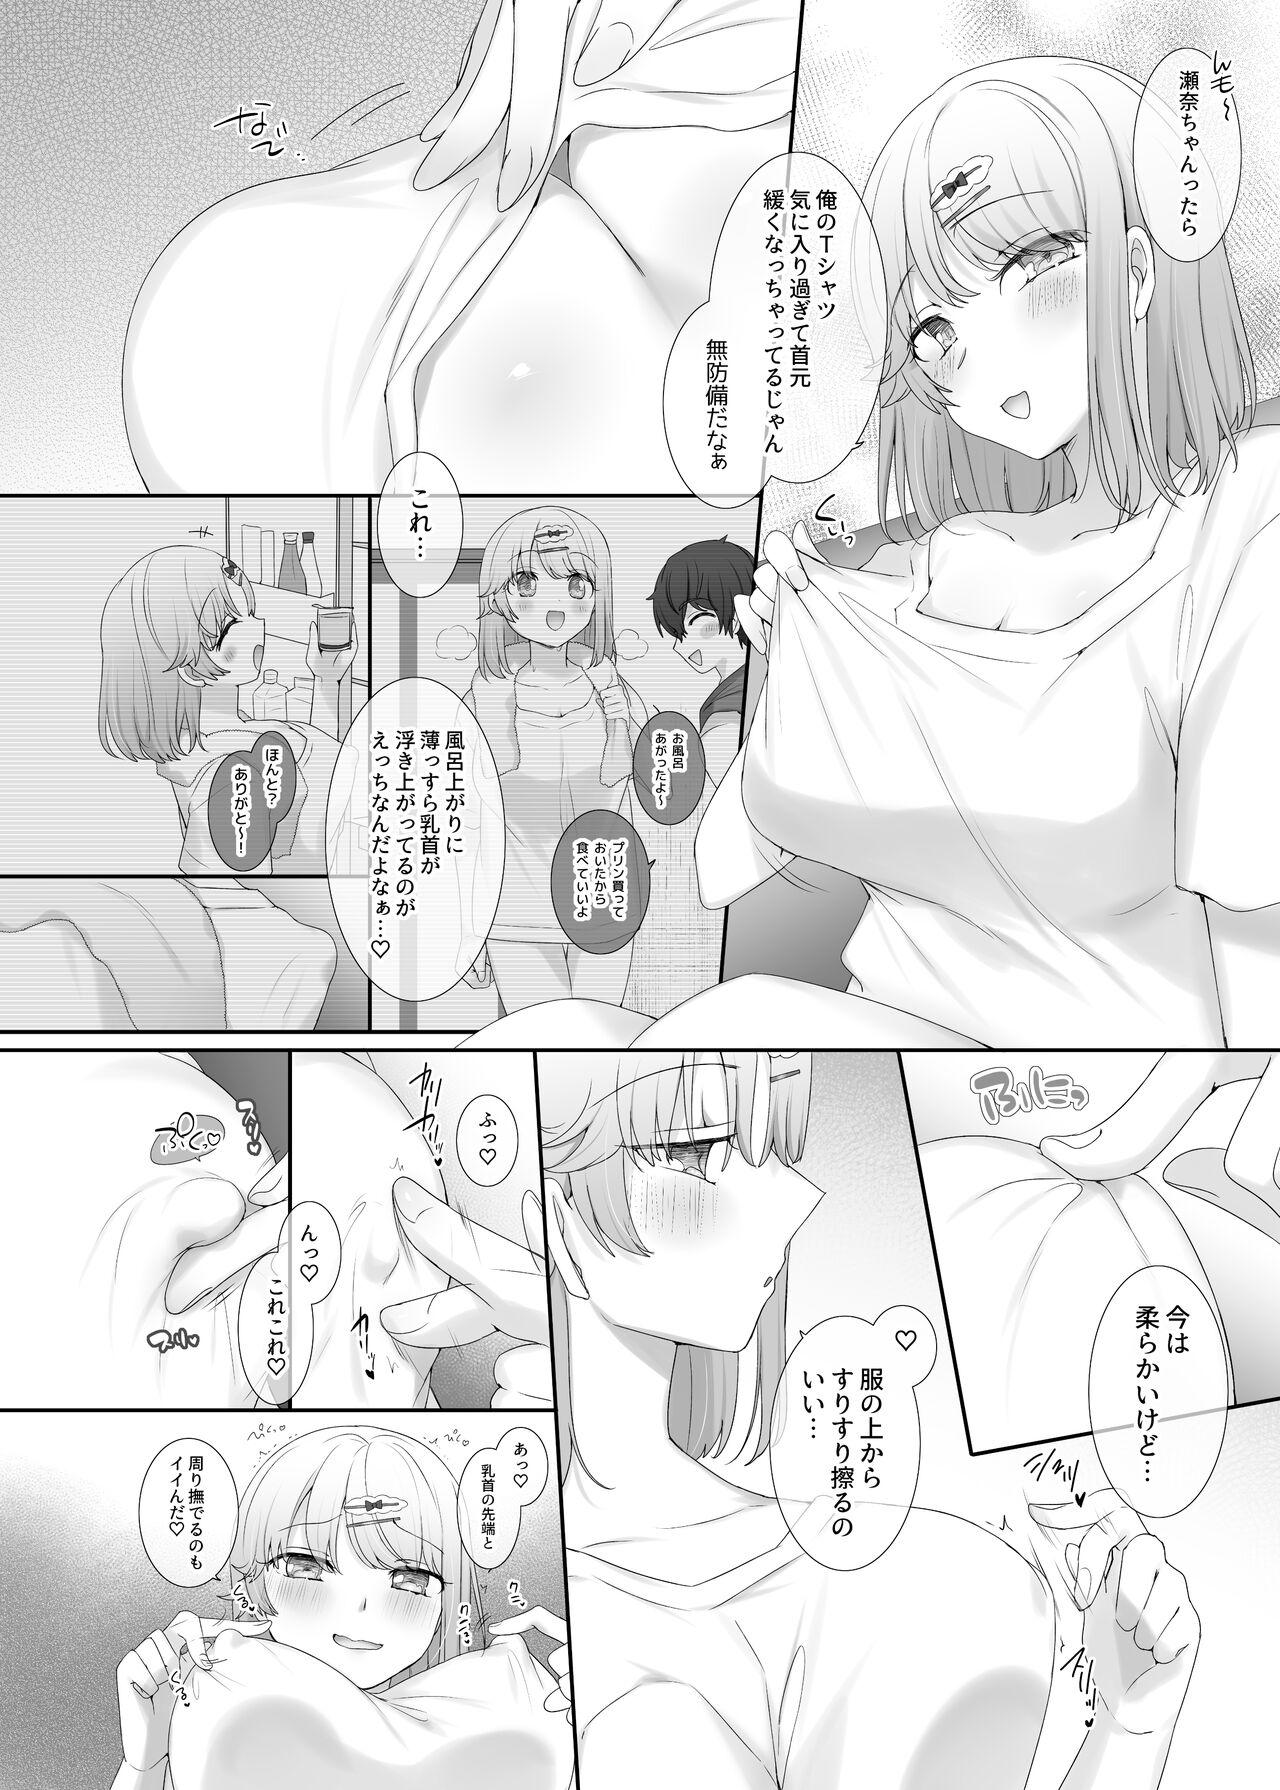 White Girl kanozyo no kimo ti ii tokoro - Original Round Ass - Page 4